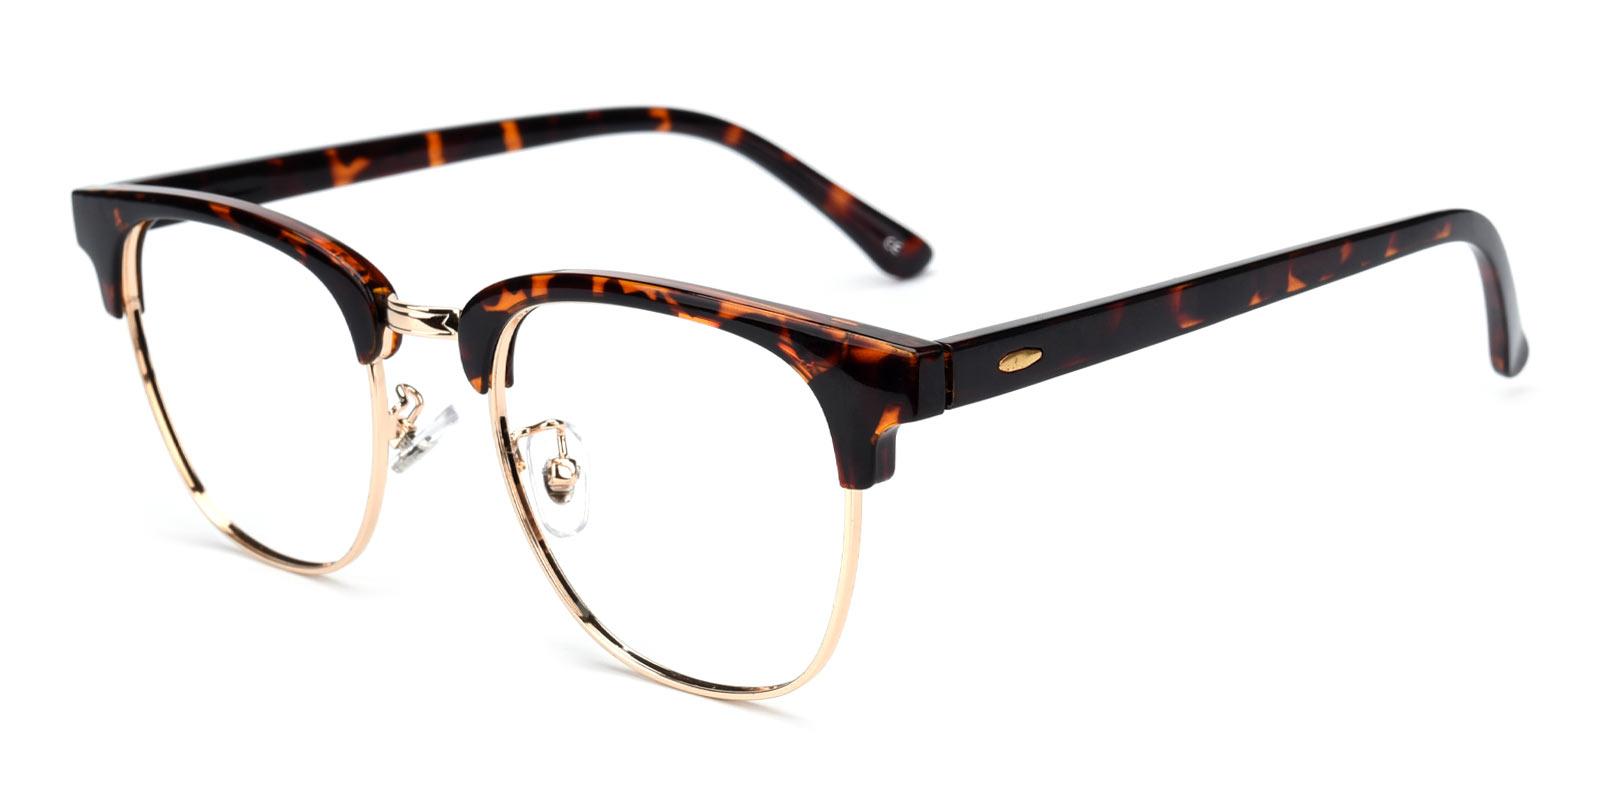 Bellingham Clip On Sunglasses - Cheap Prescription Glasses Online